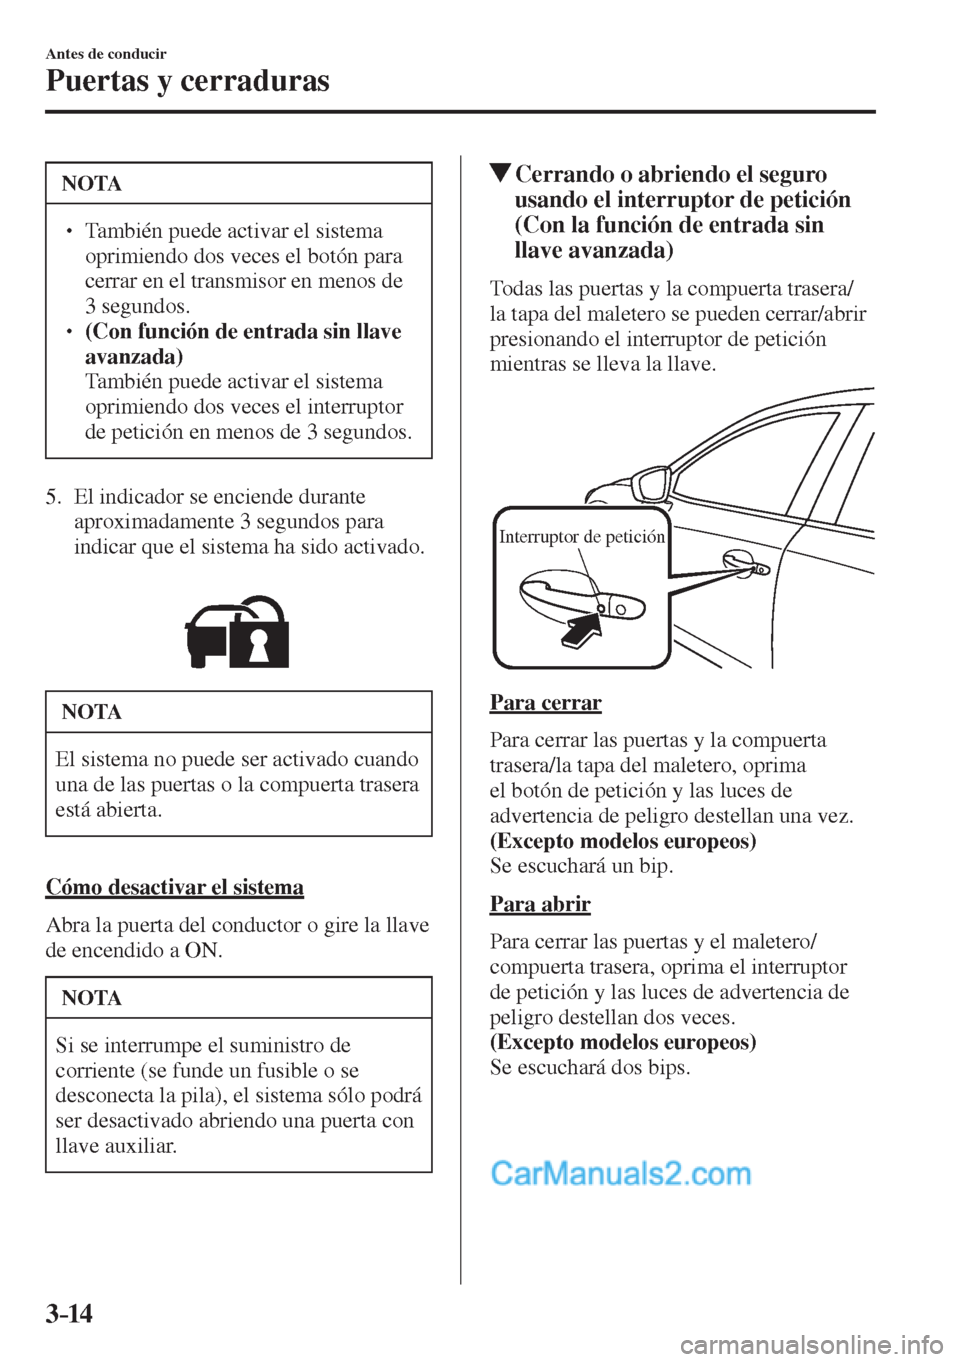 MAZDA MODEL 2 2017  Manual del propietario (in Spanish) 3–14
Antes de conducir
Puertas y cerraduras
 NOTA
� � ��  También puede activar el sistema 
oprimiendo dos veces el botón para 
cerrar en el transmisor en menos de 
3 segundos. 
� � ��  (Con